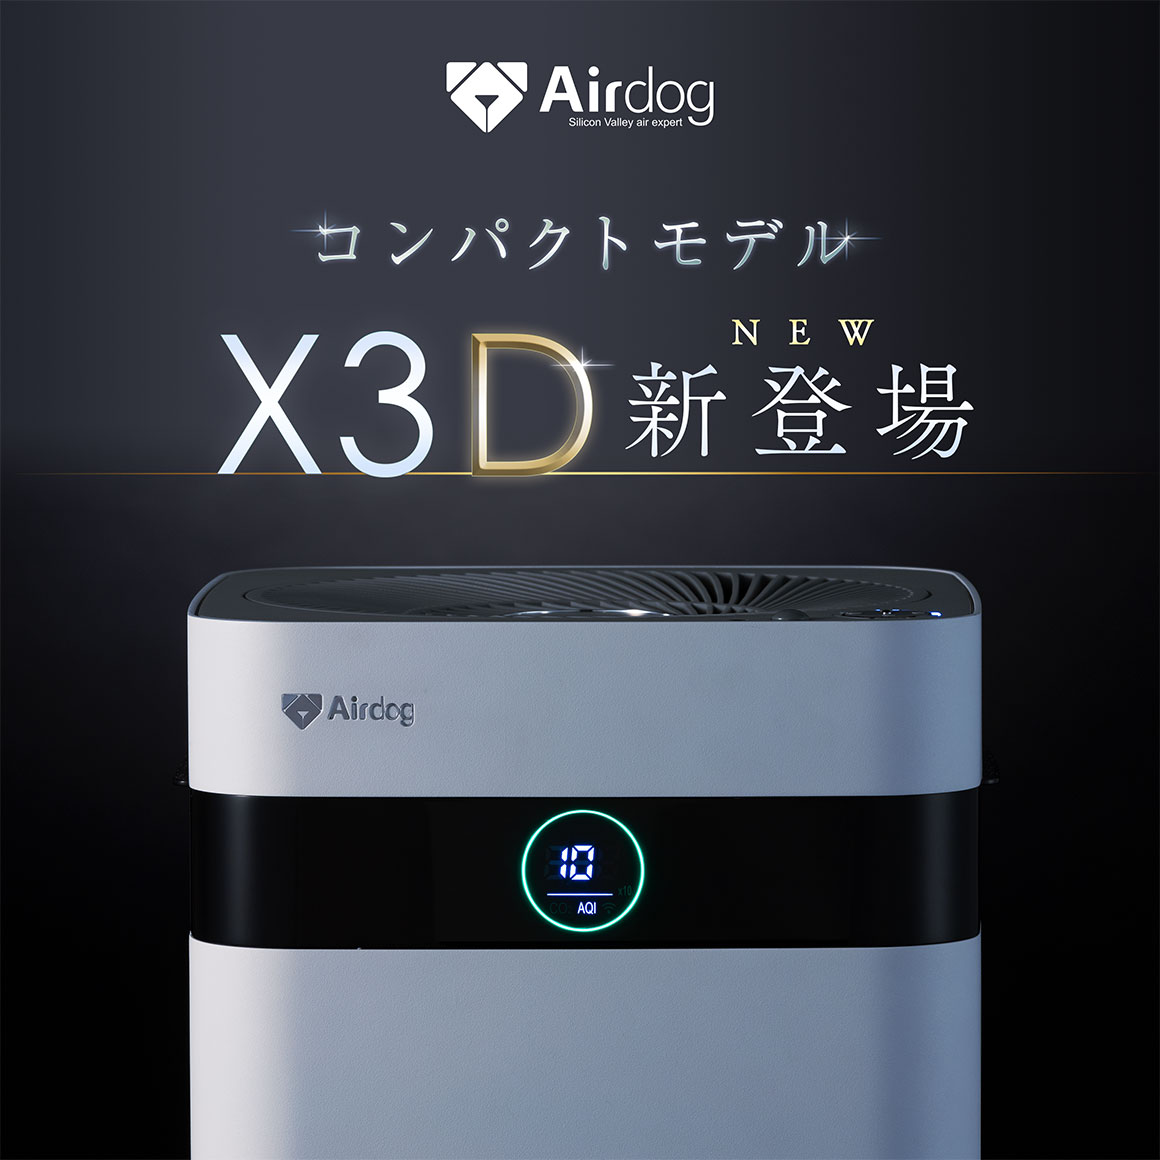 Airdog X3D空気清浄機